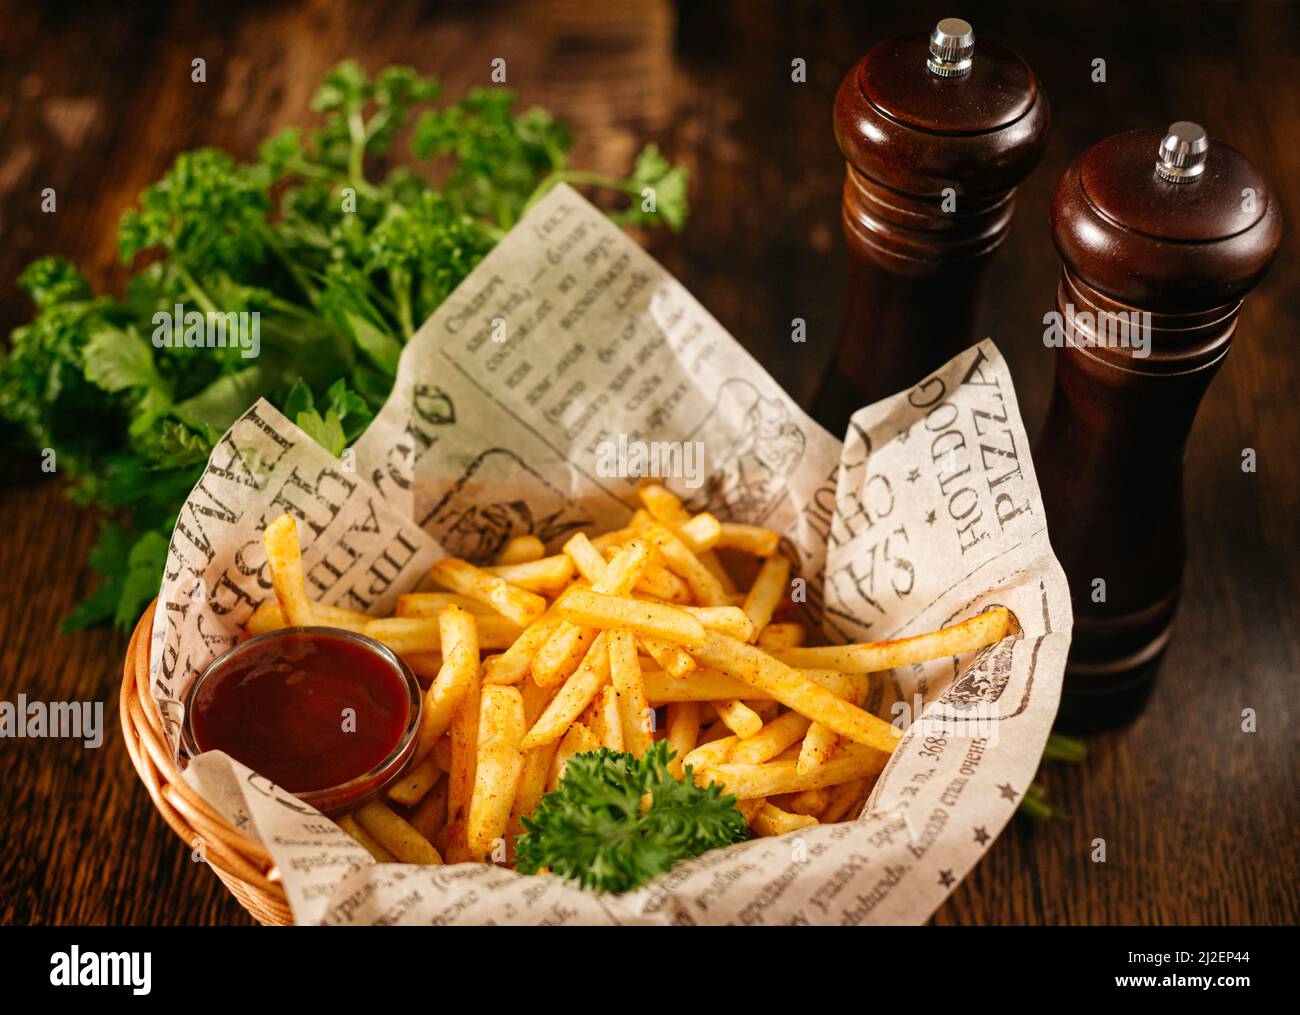 Portion de frites et sauce ketchup. Plats de bar servis dans un panier. Frites croustillantes avec feuilles de persil. Banque D'Images